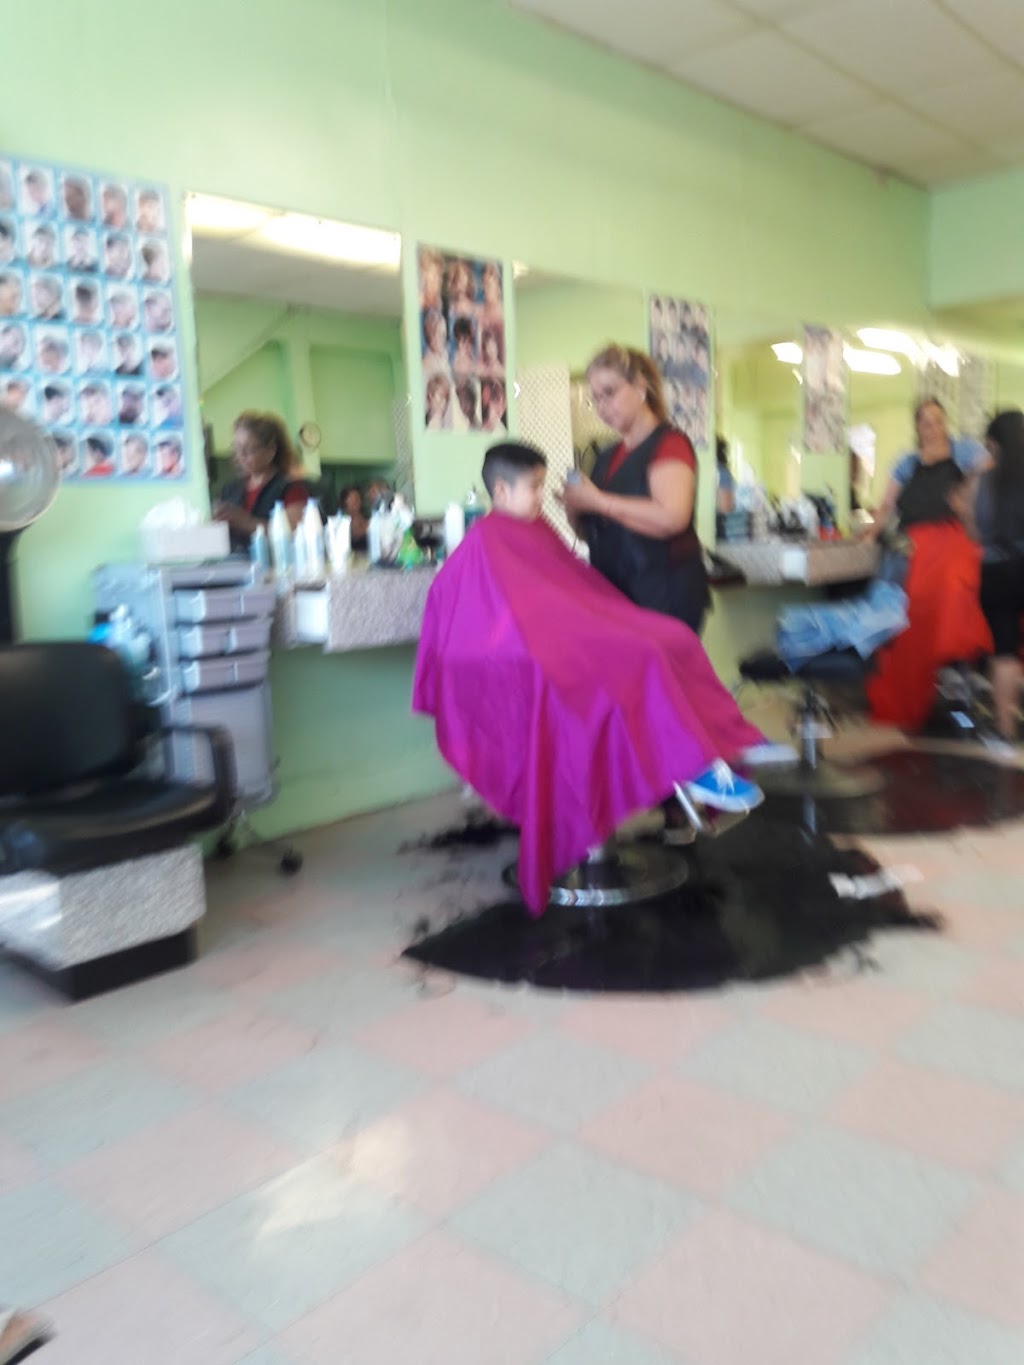 Stephanies Beauty Salon | 2301 E 7th St, Long Beach, CA 90804 | Phone: (562) 856-3628